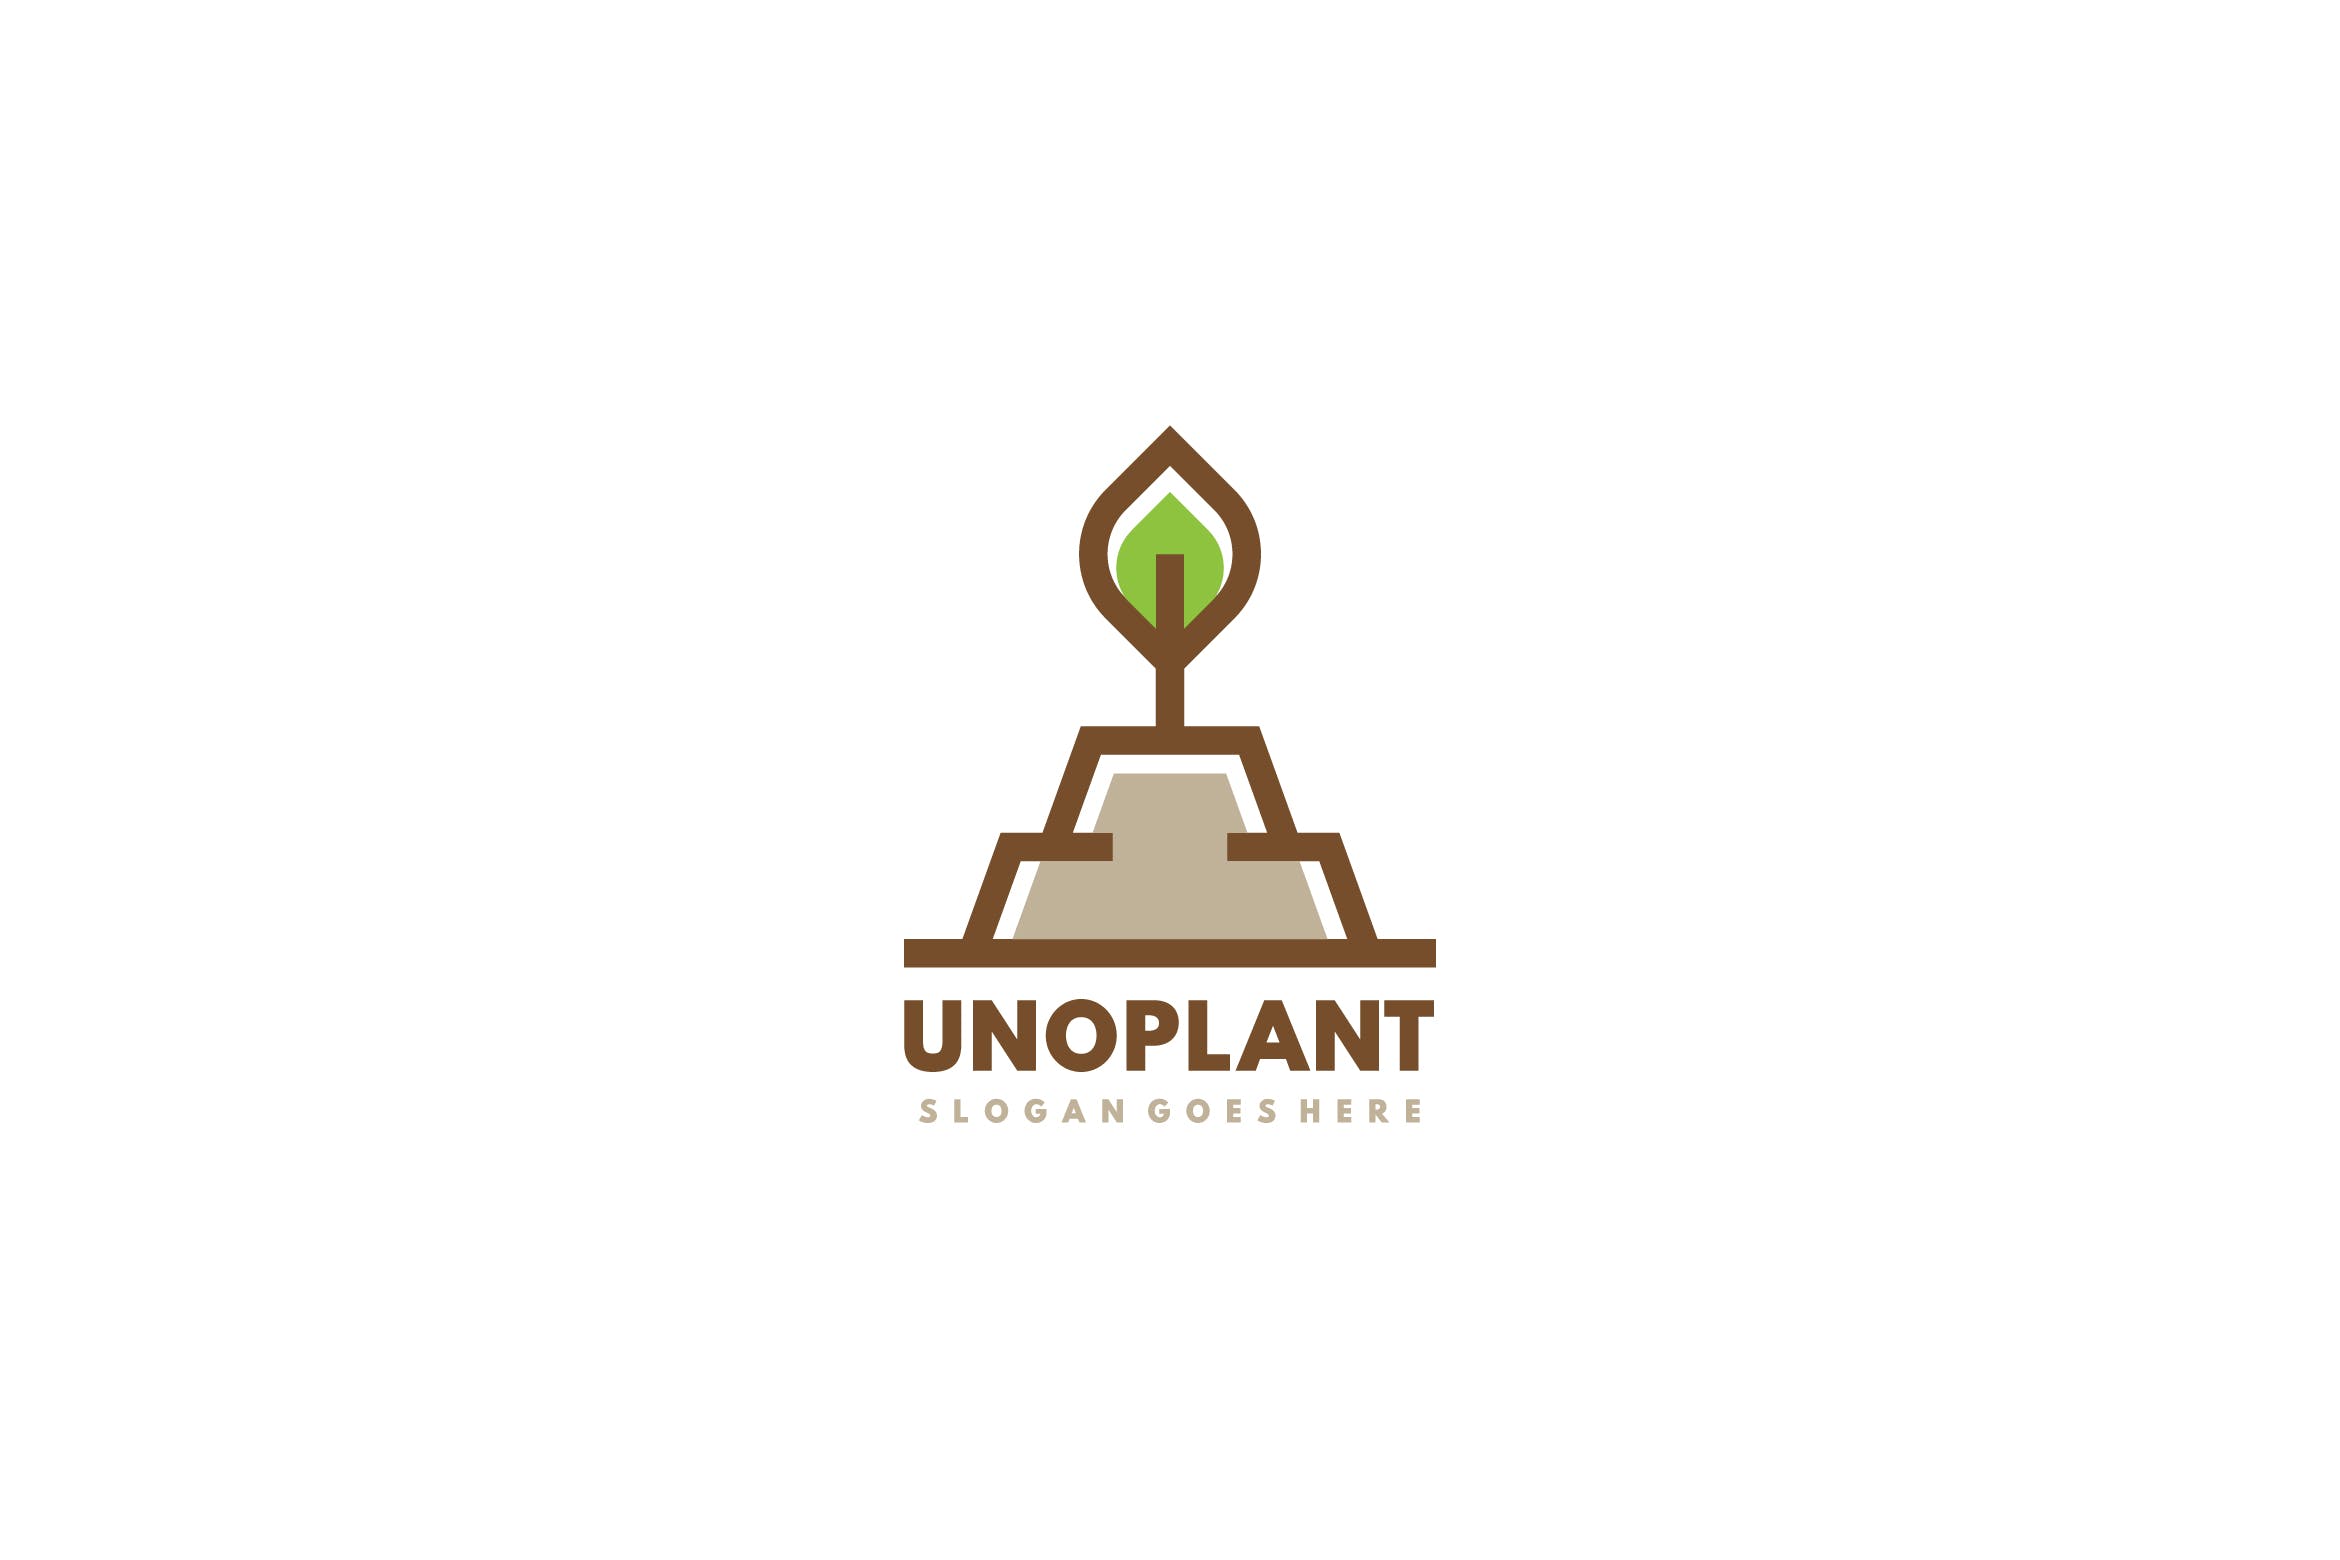 简约植物图形标志Logo设计第一素材精选模板 Plant Logo插图